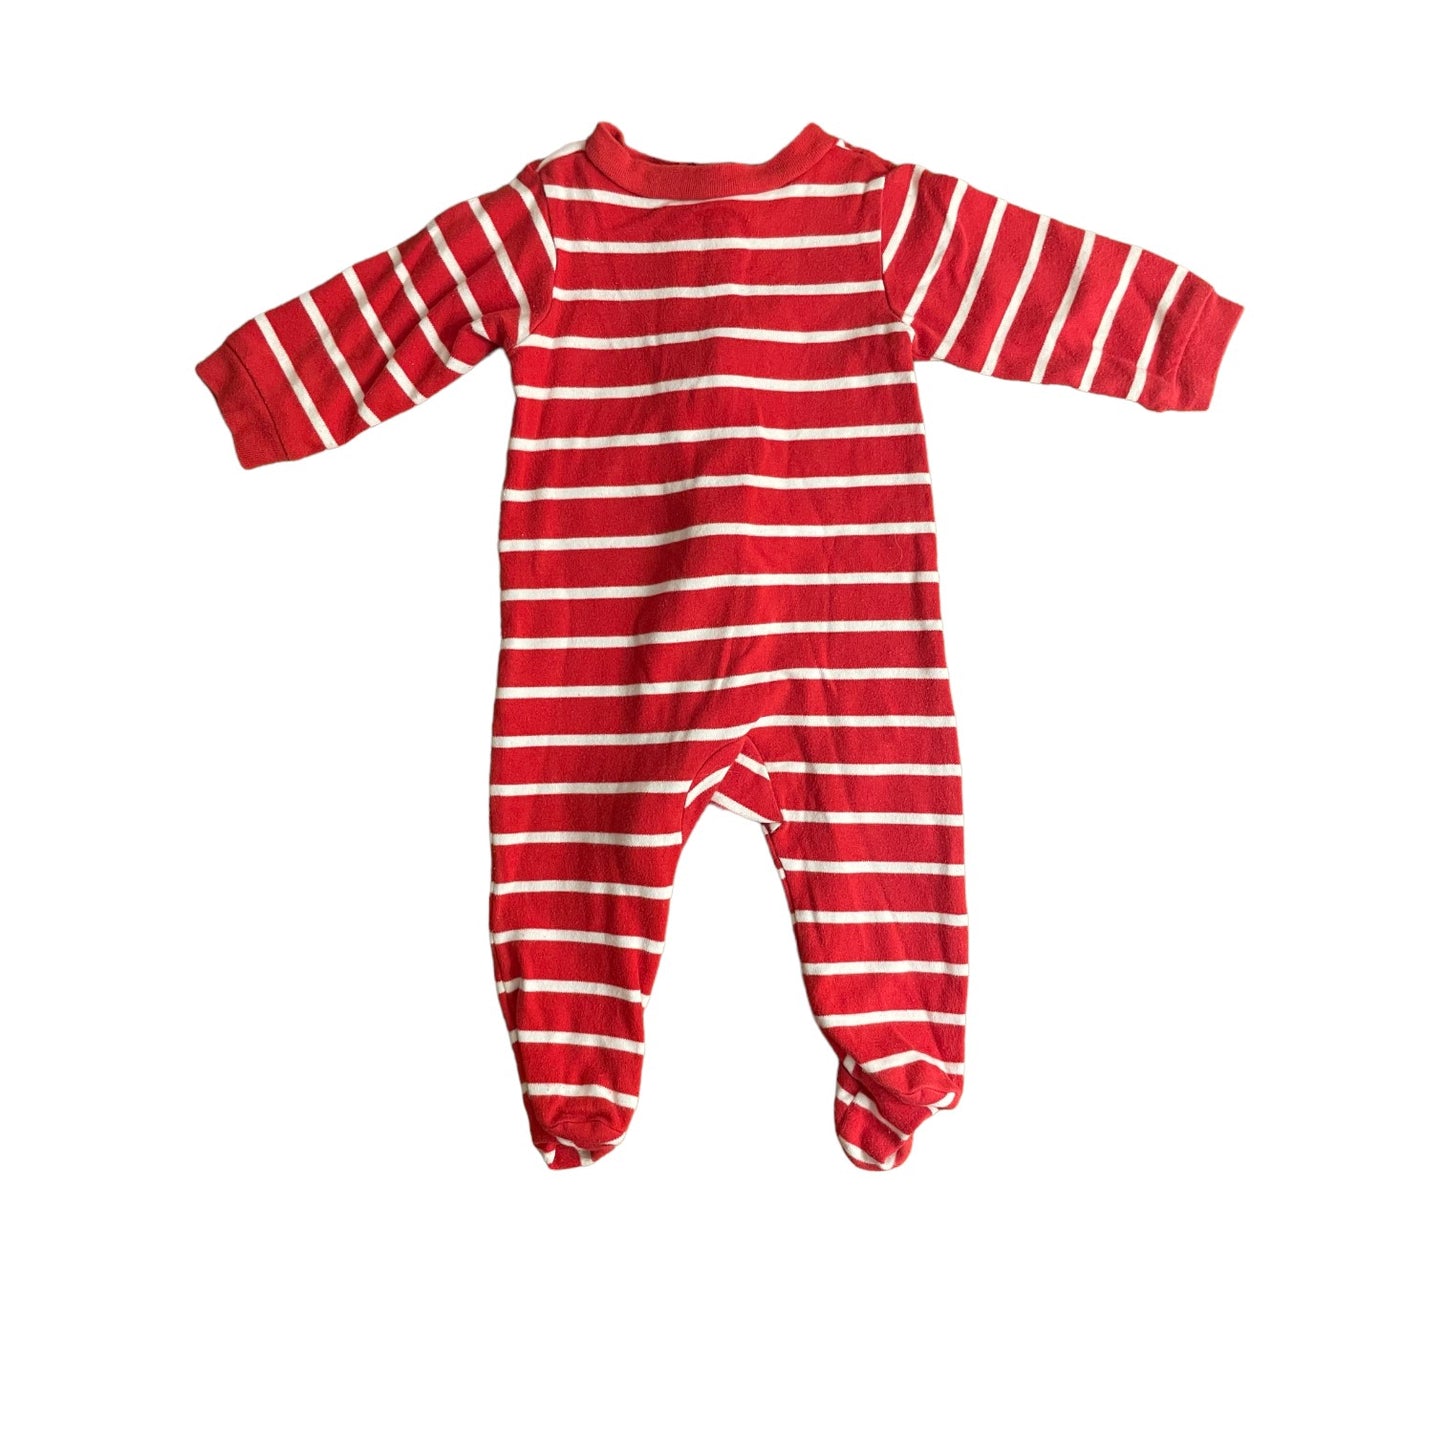 Carter's Child of Mine Pajama Onesie Boys 6-9 months